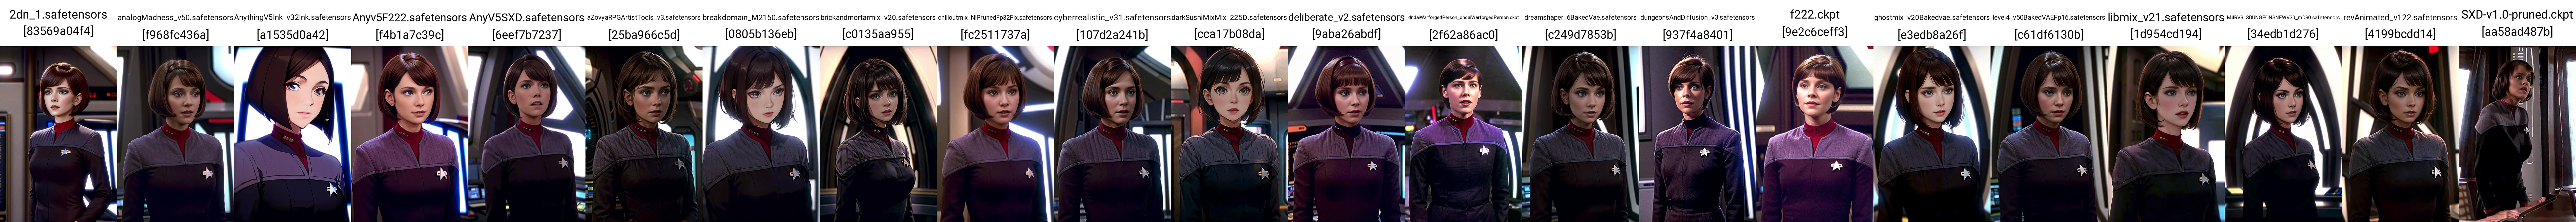 Star Trek DS9 uniforms image by Avilister